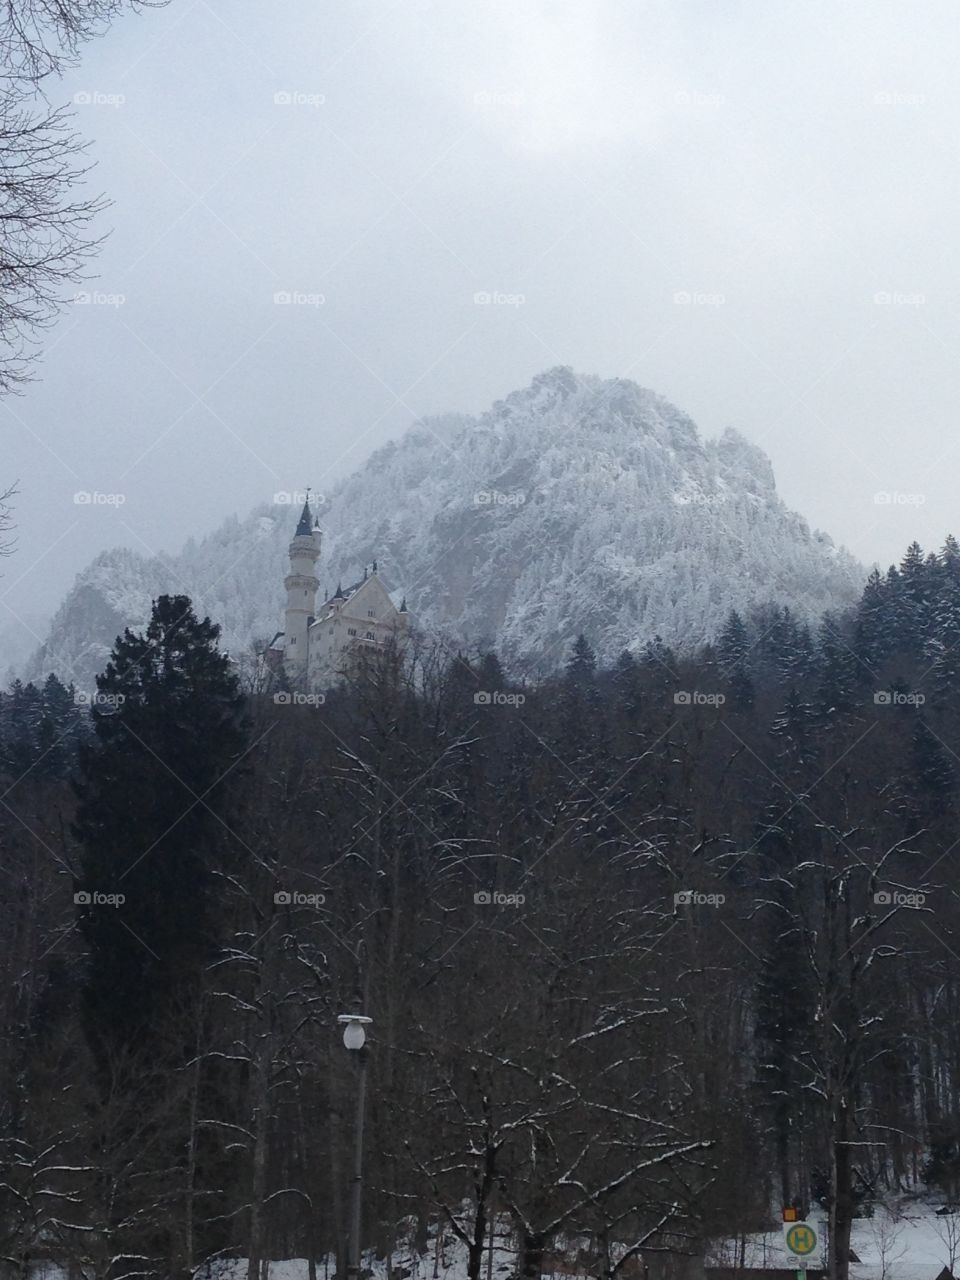 FRANÇAIS: Un château perdu dans la montagne, le plus beau des Neuschwanstein ! // ENGLISH: A listed castle in the forest, the more beautiful of Neuschwanstein !